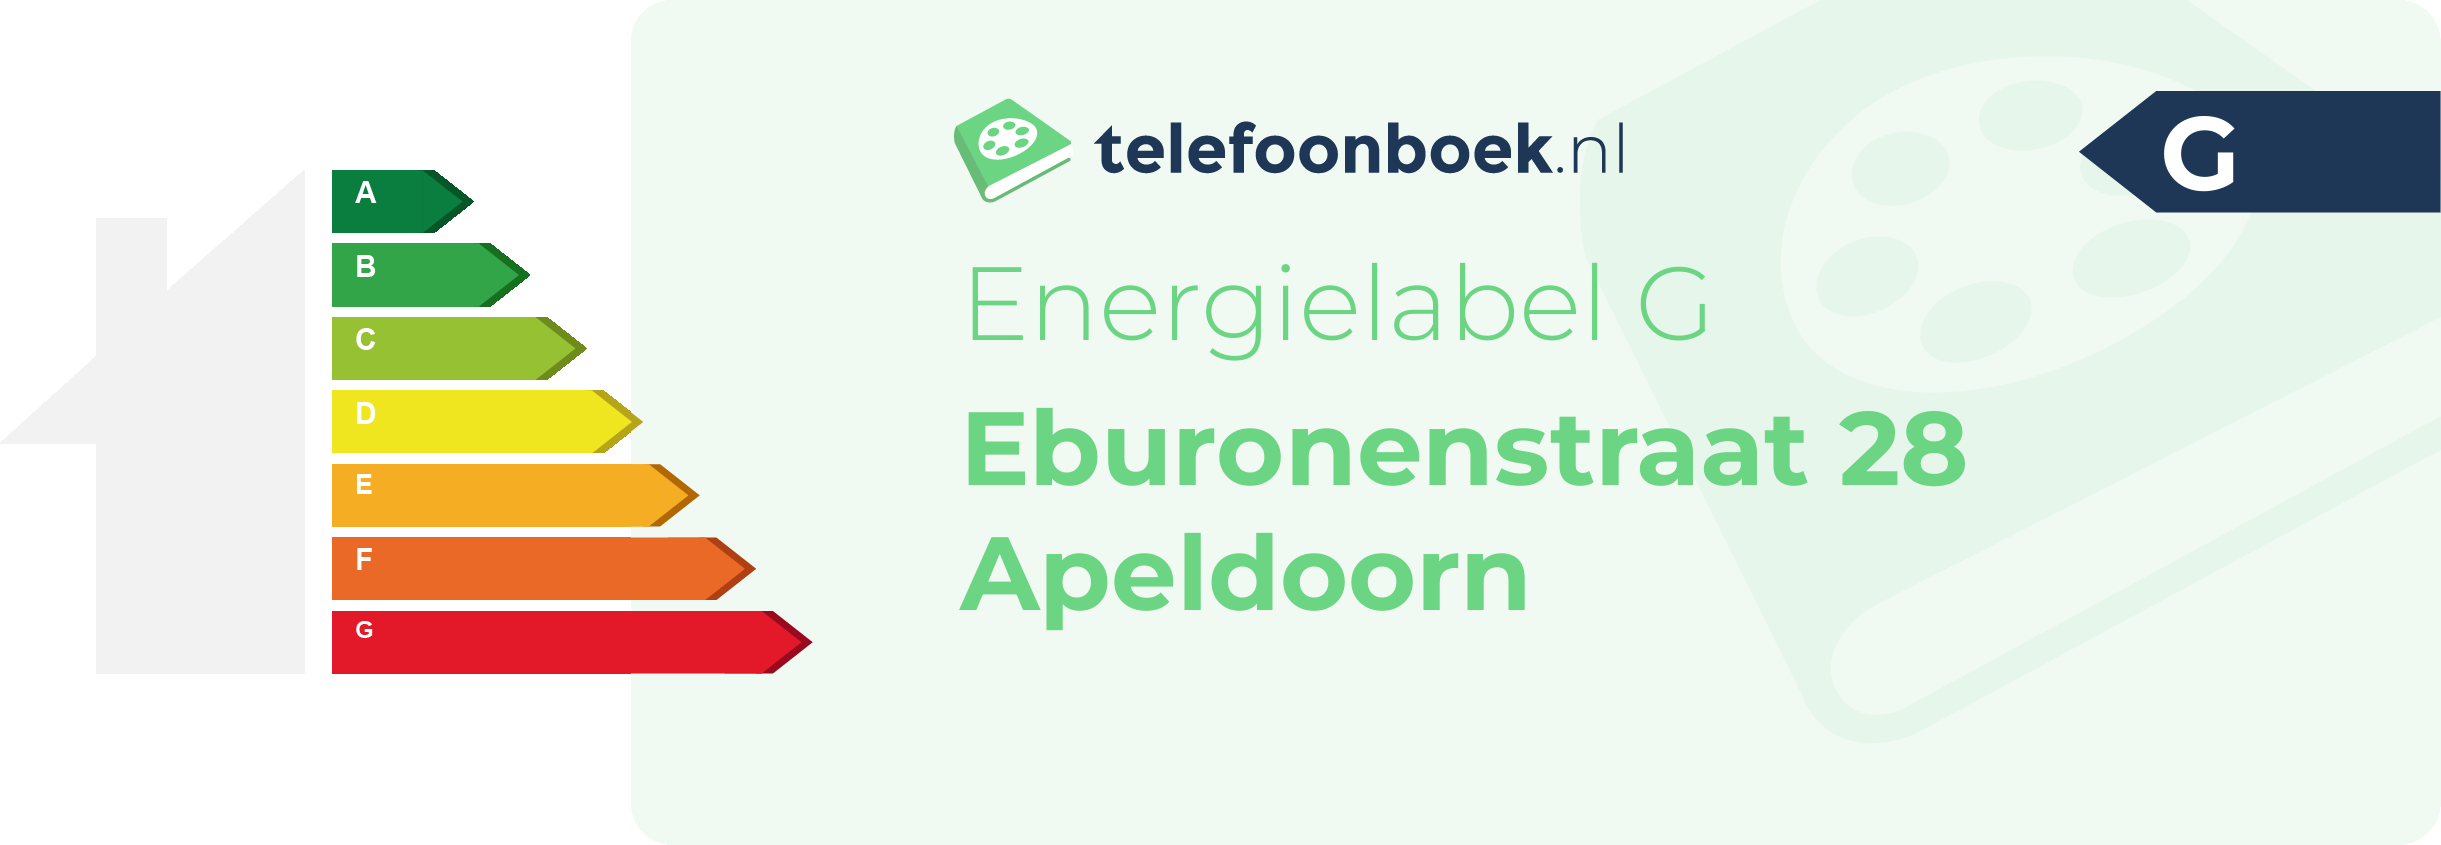 Energielabel Eburonenstraat 28 Apeldoorn